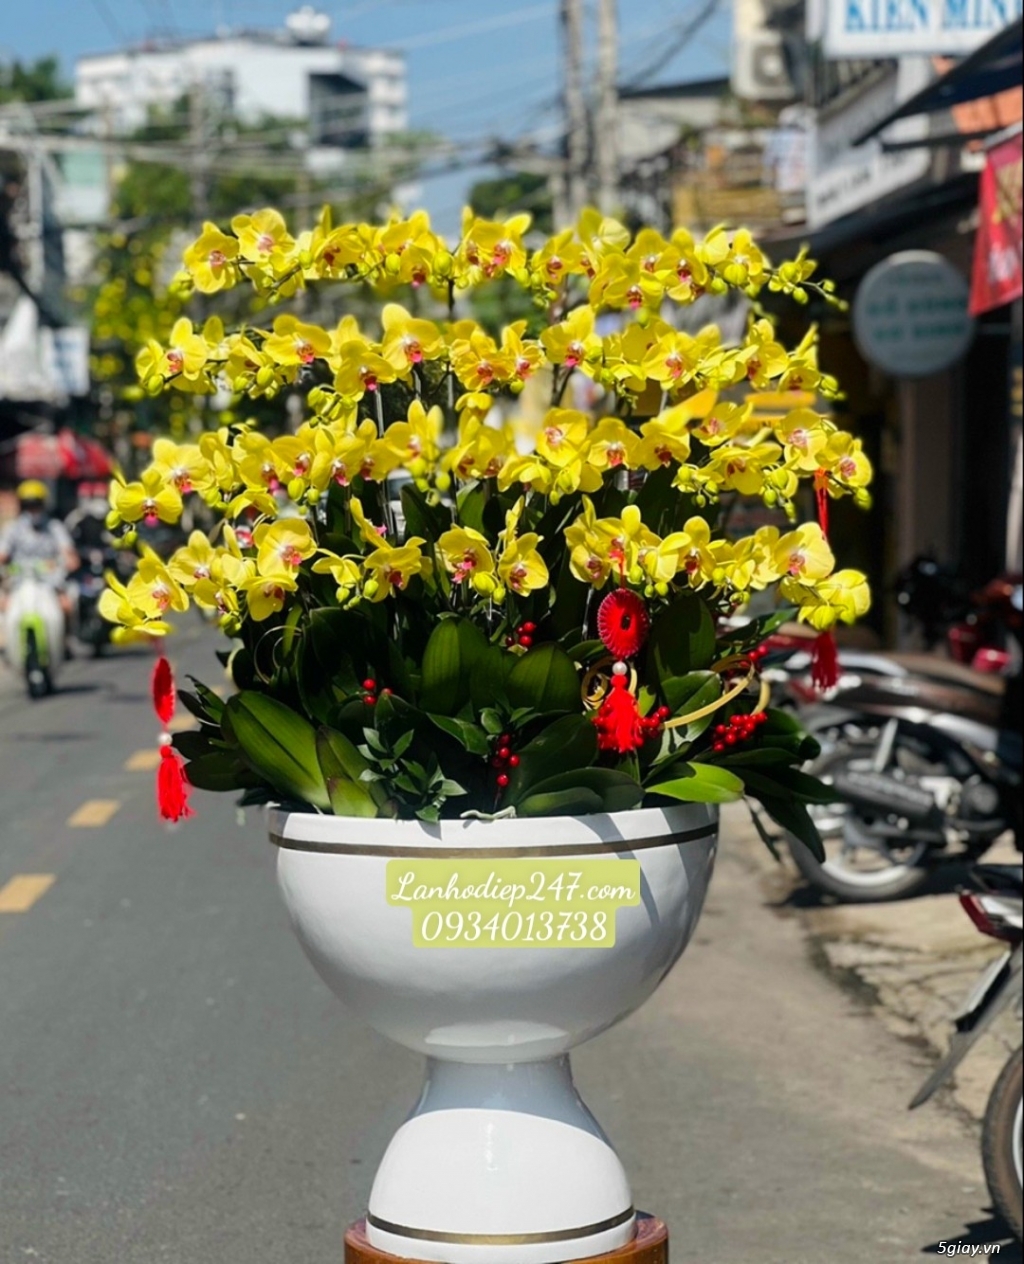 Shop hoa tuoi 24/7 tphcm phục vụ hoa lan hồ điệp uy tín toàn quốc - 16